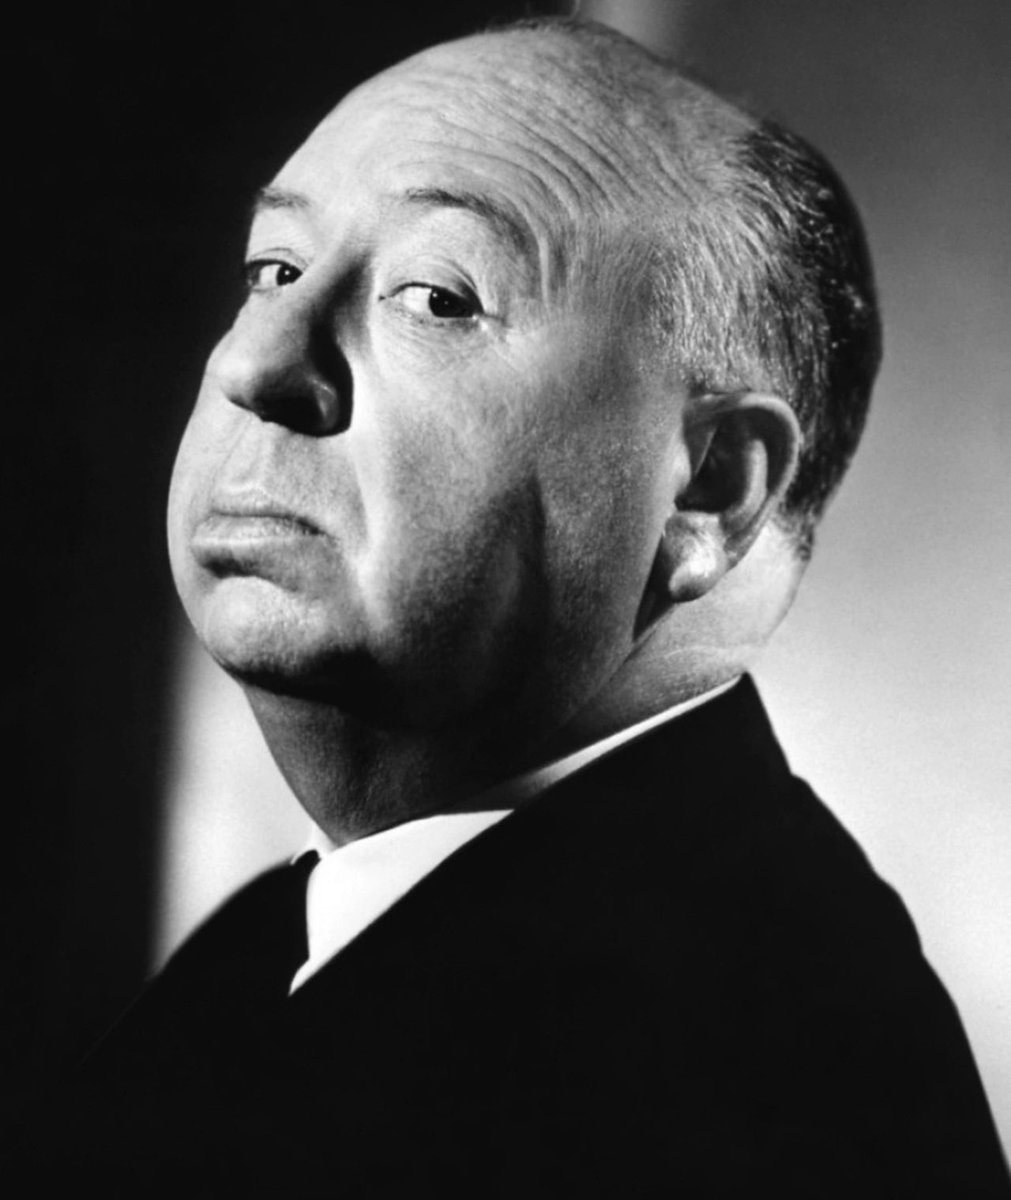 🎬 Alfred Hitchcock, le Maître du Suspens, est décédé le 29 avril 1980, il y a 44 ans jour pour jour.

📽️J’adore ses films. Leur ambiance. Leur modernité. Sa capacité presque littéraire à allier le frisson et la beauté.

🎞️ Quel est votre film préféré de cet immense réalisateur ?